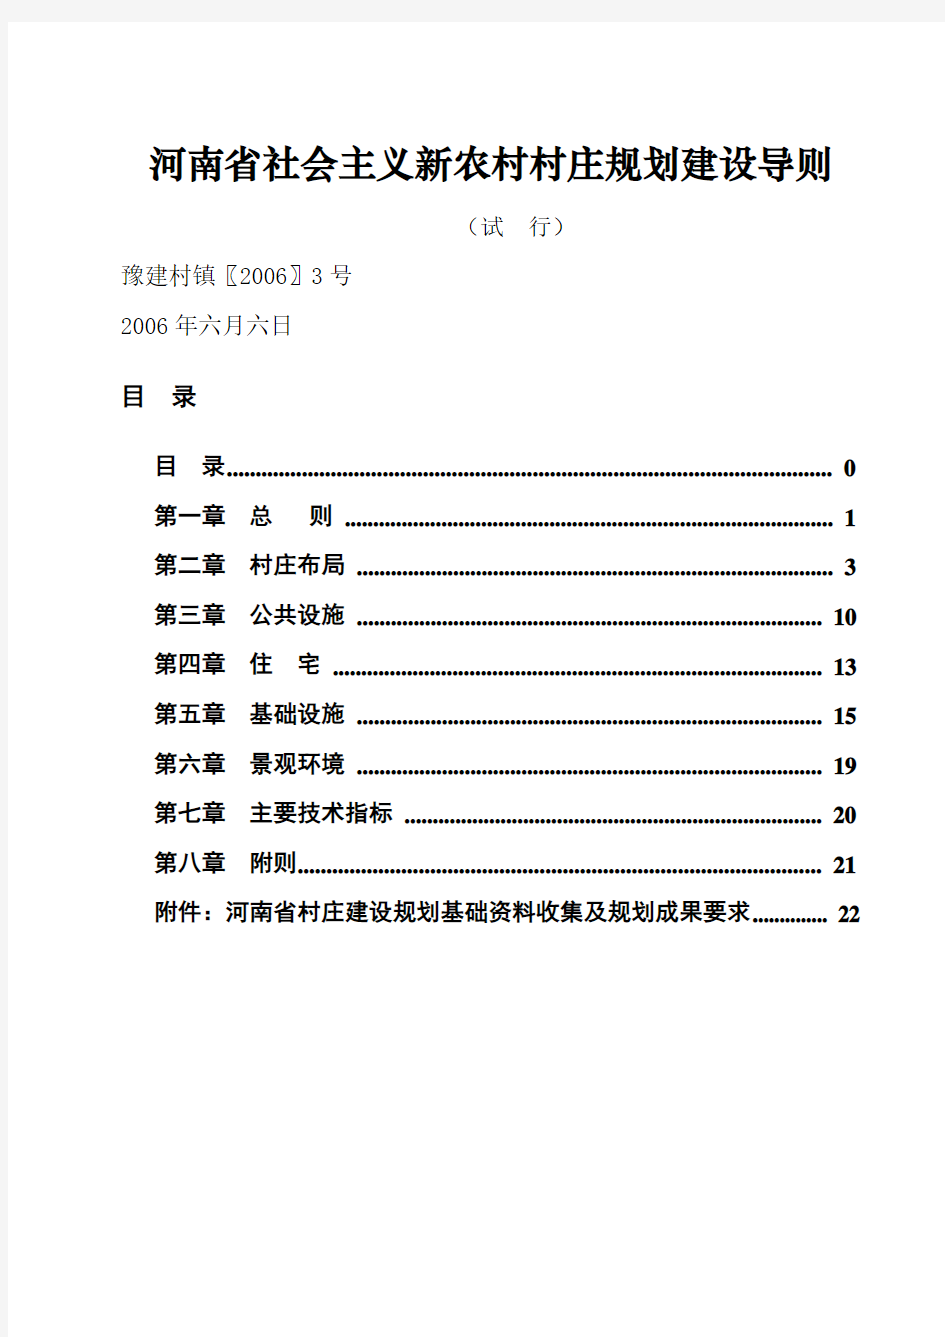 河南省社会主义新农村村庄规划建设导则(最终稿-2006)